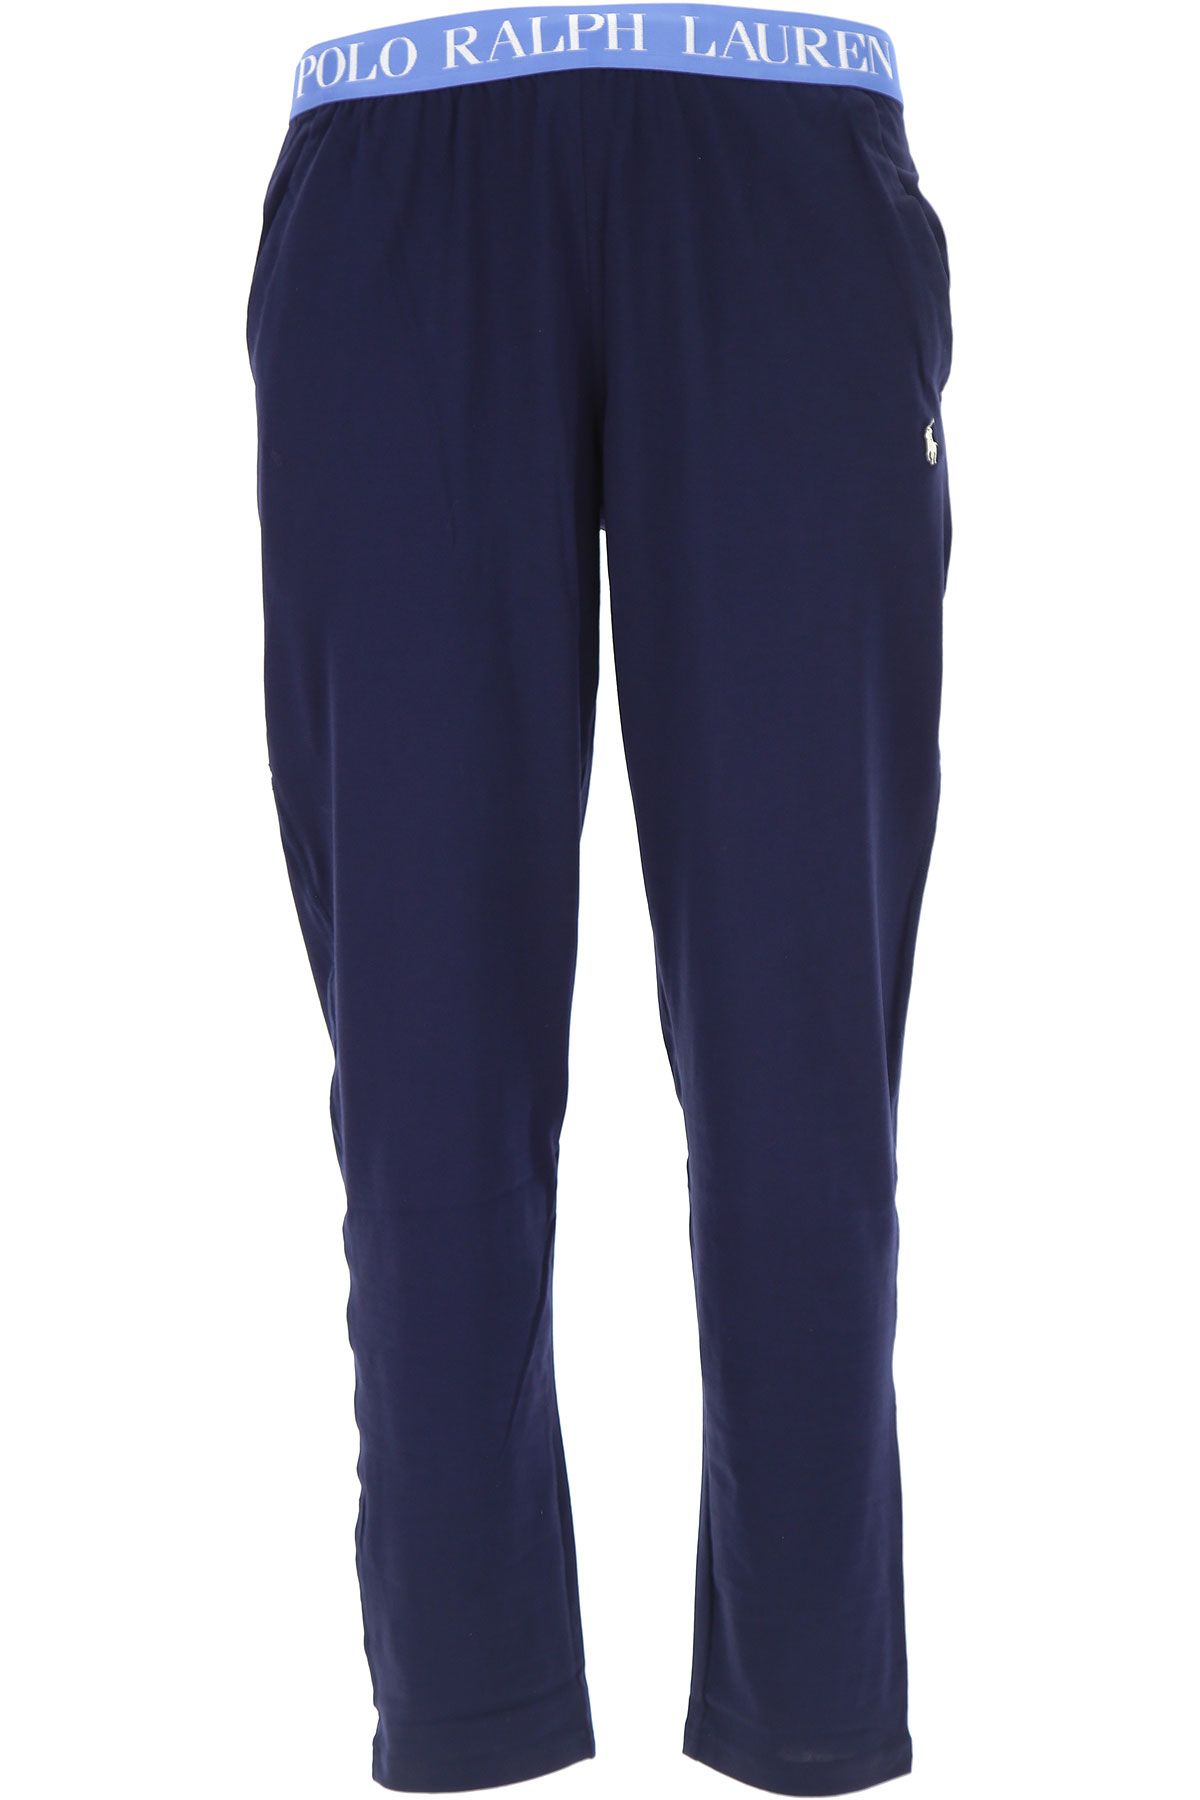 Ralph Lauren Sous-vêtements, Bleu marine, Coton, 2017, L M S XL